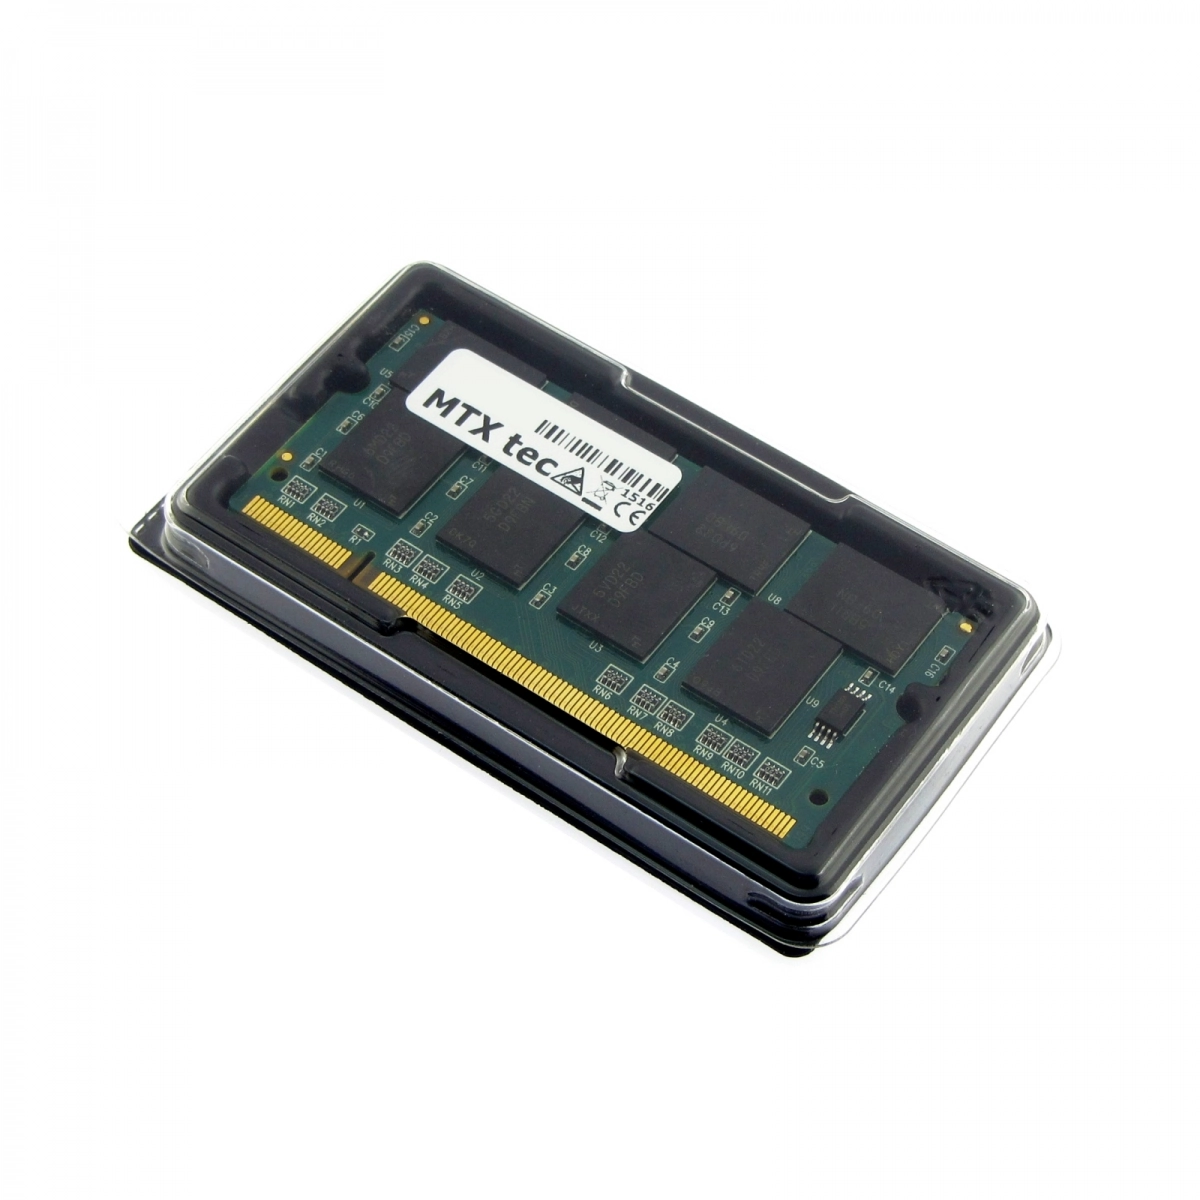 MTXtec Arbeitsspeicher 1 GB RAM für PACKARD BELL EasyNote MIT-RHE-B